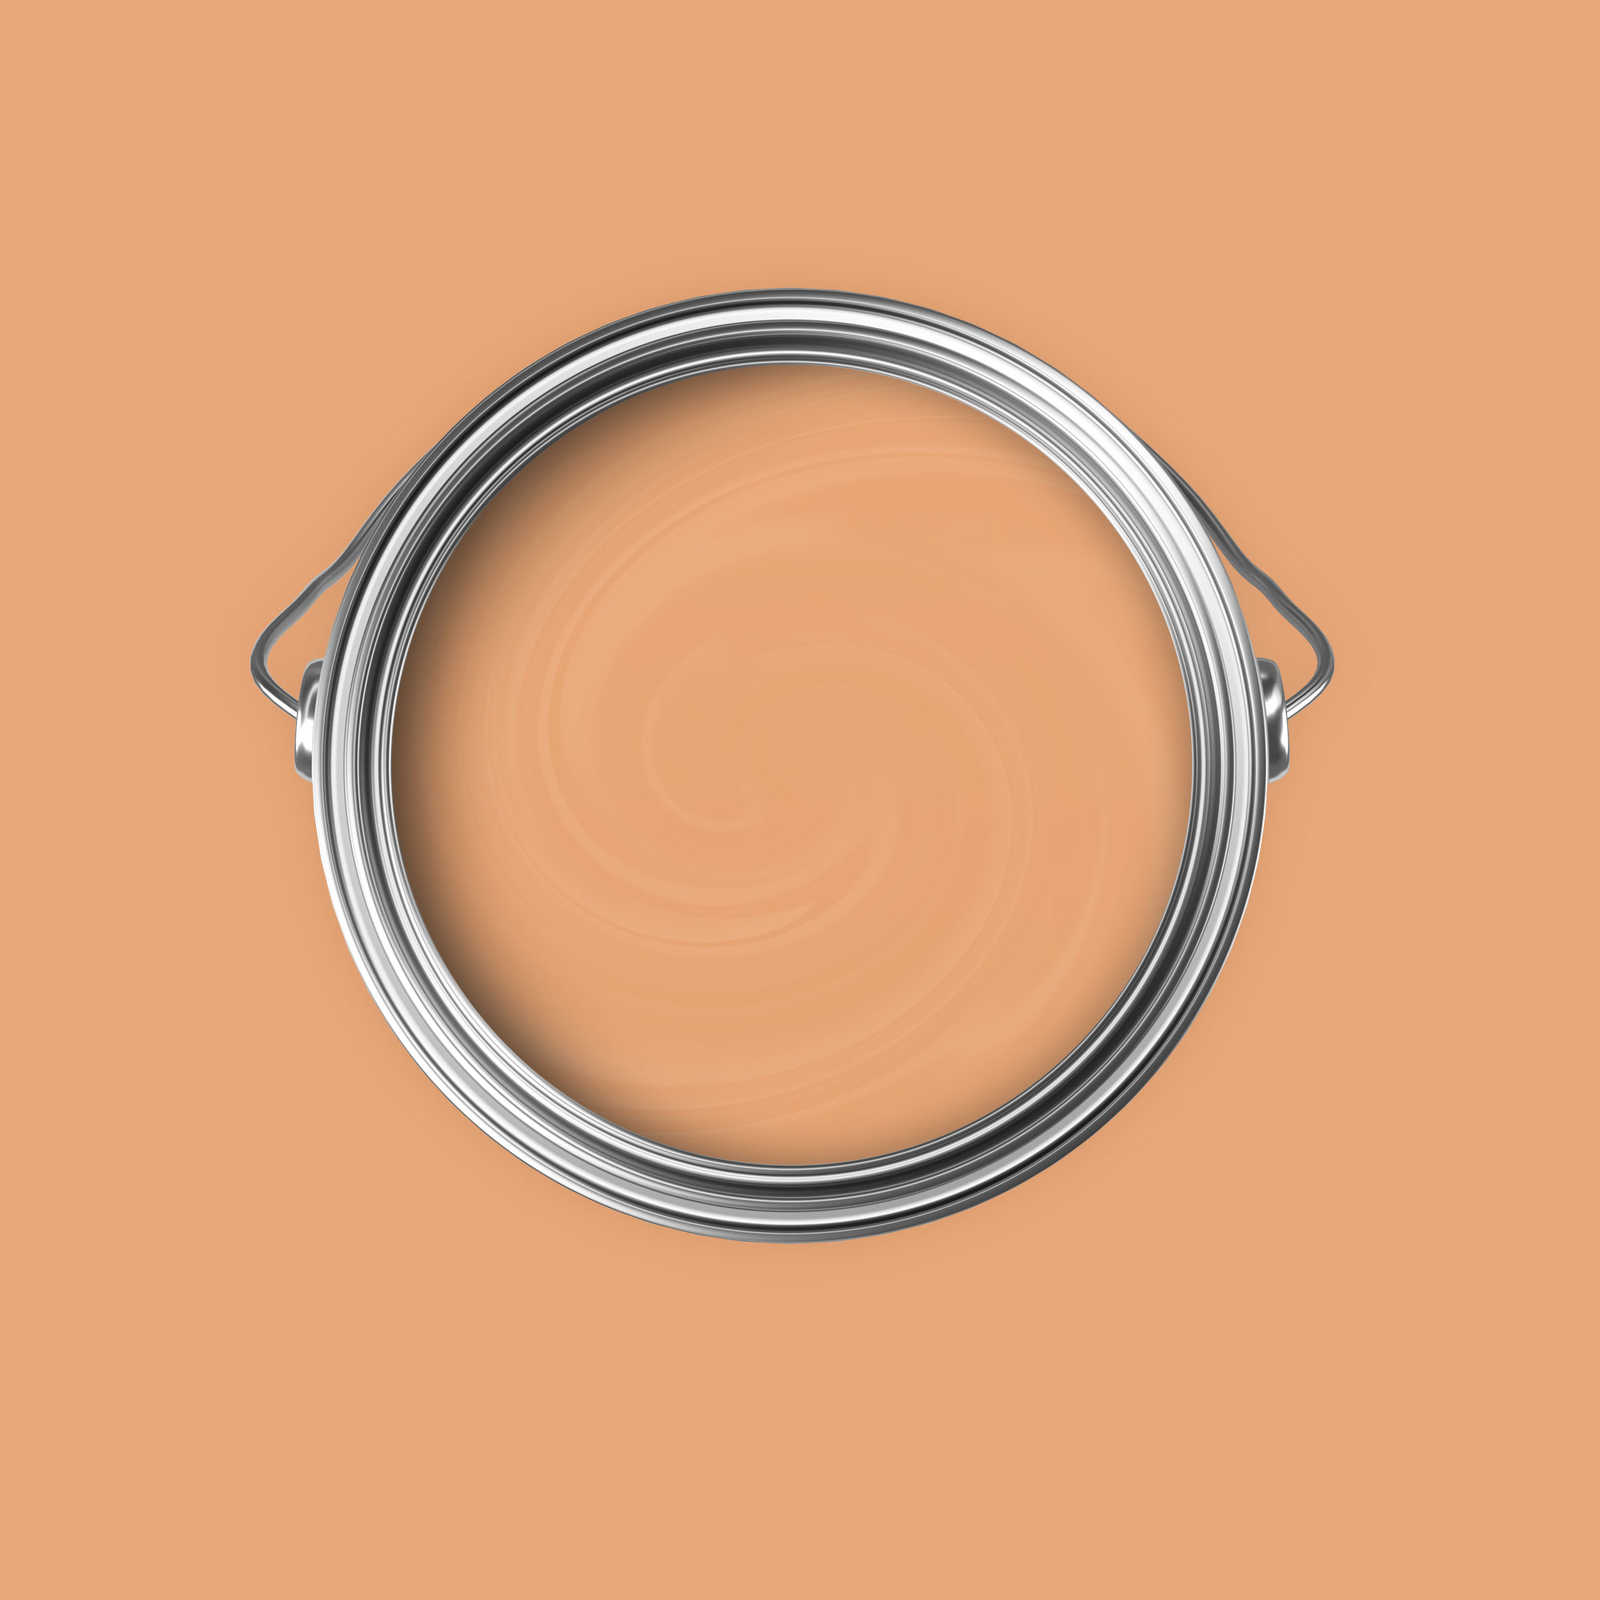             Pittura murale Premium Awakening Apricot »Pretty Peach« NW901 – 5 litri
        